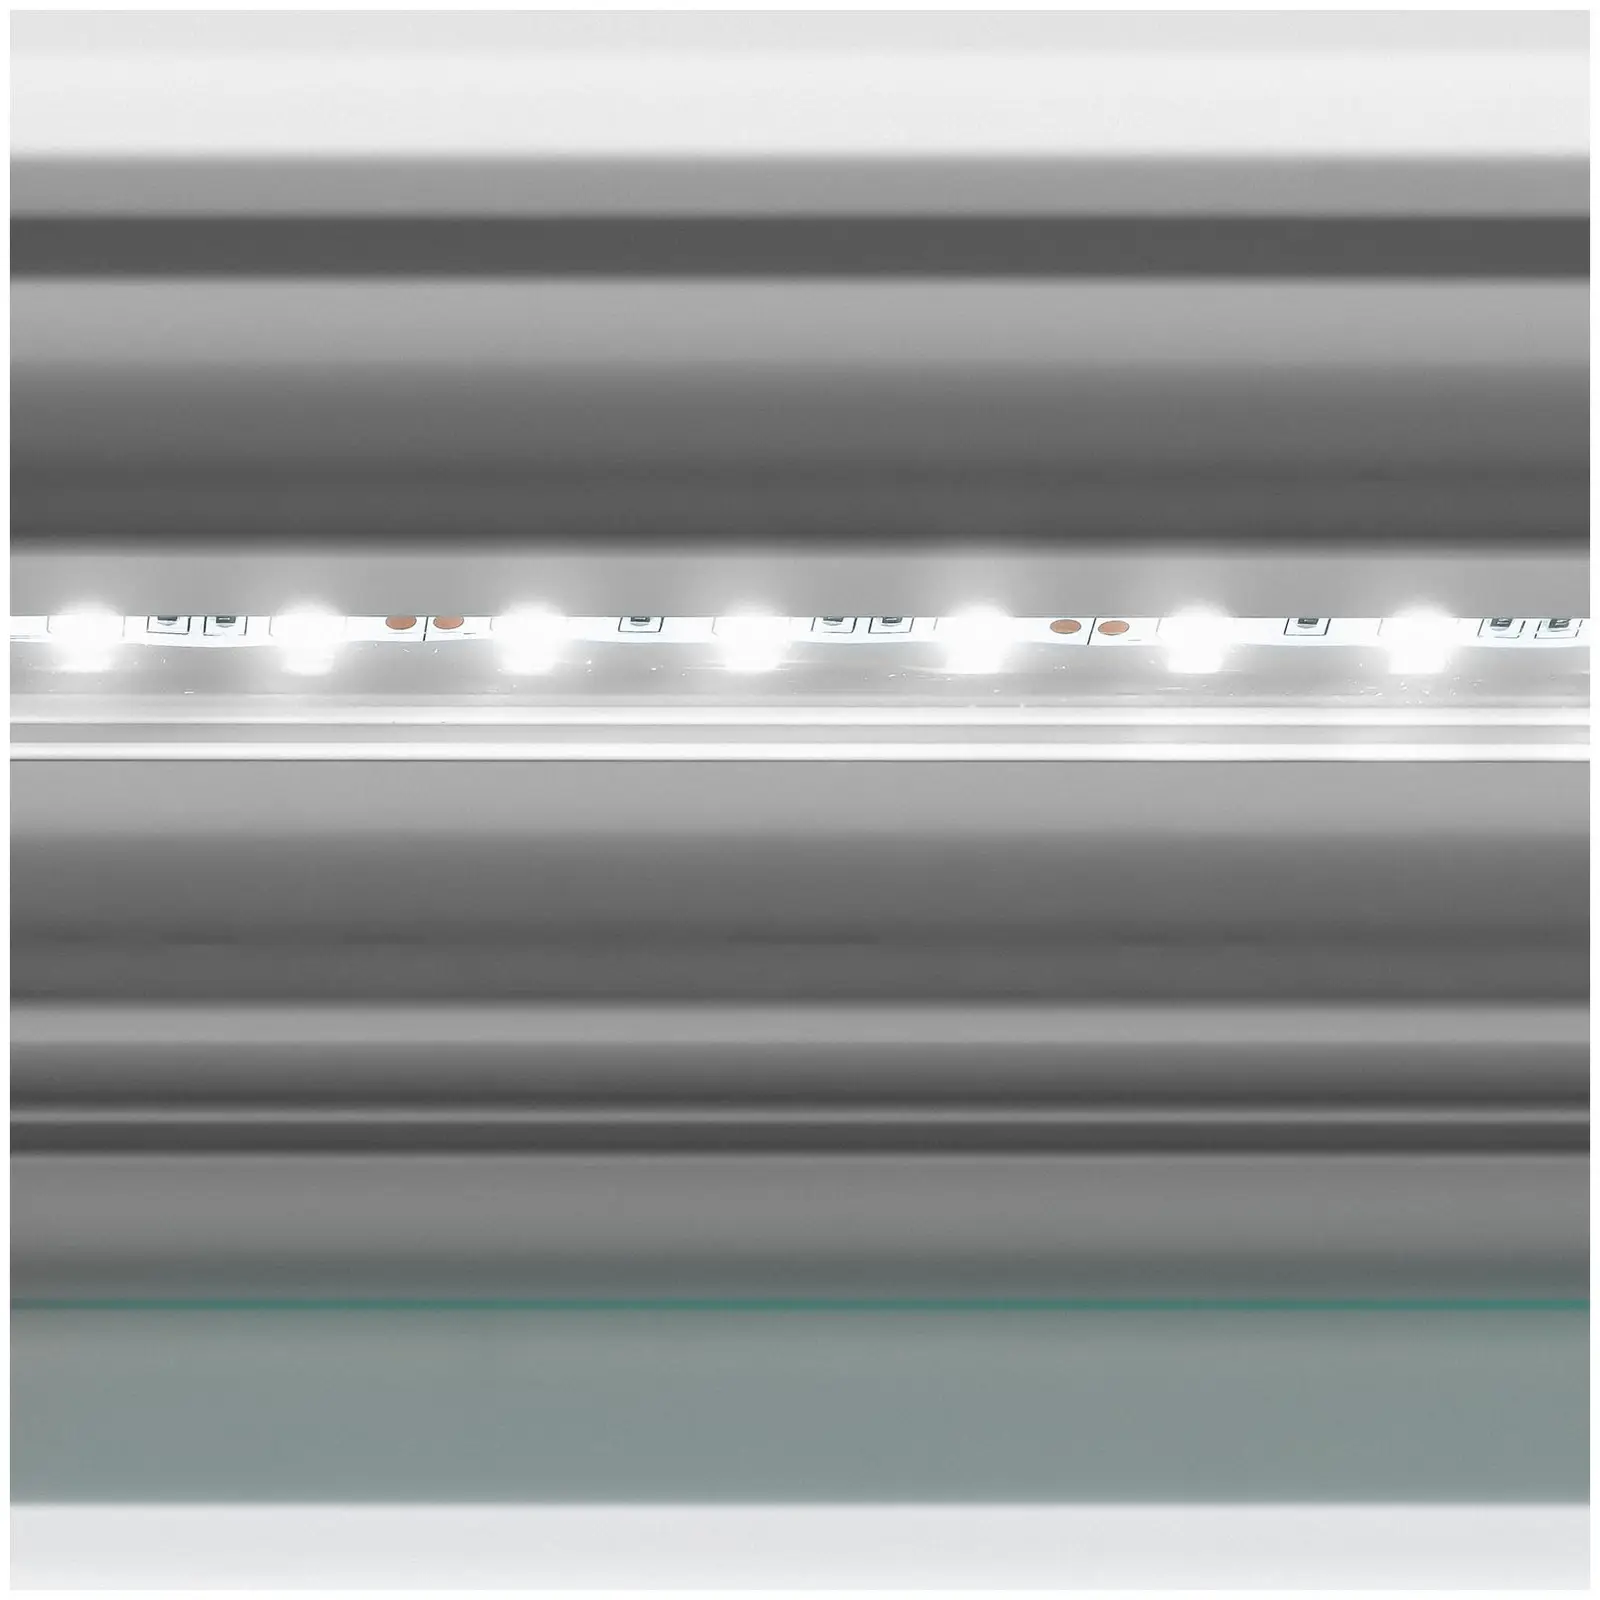 Banco vetrina gelato - 540 L - LED - 4 ruote - Verde chiaro, argento